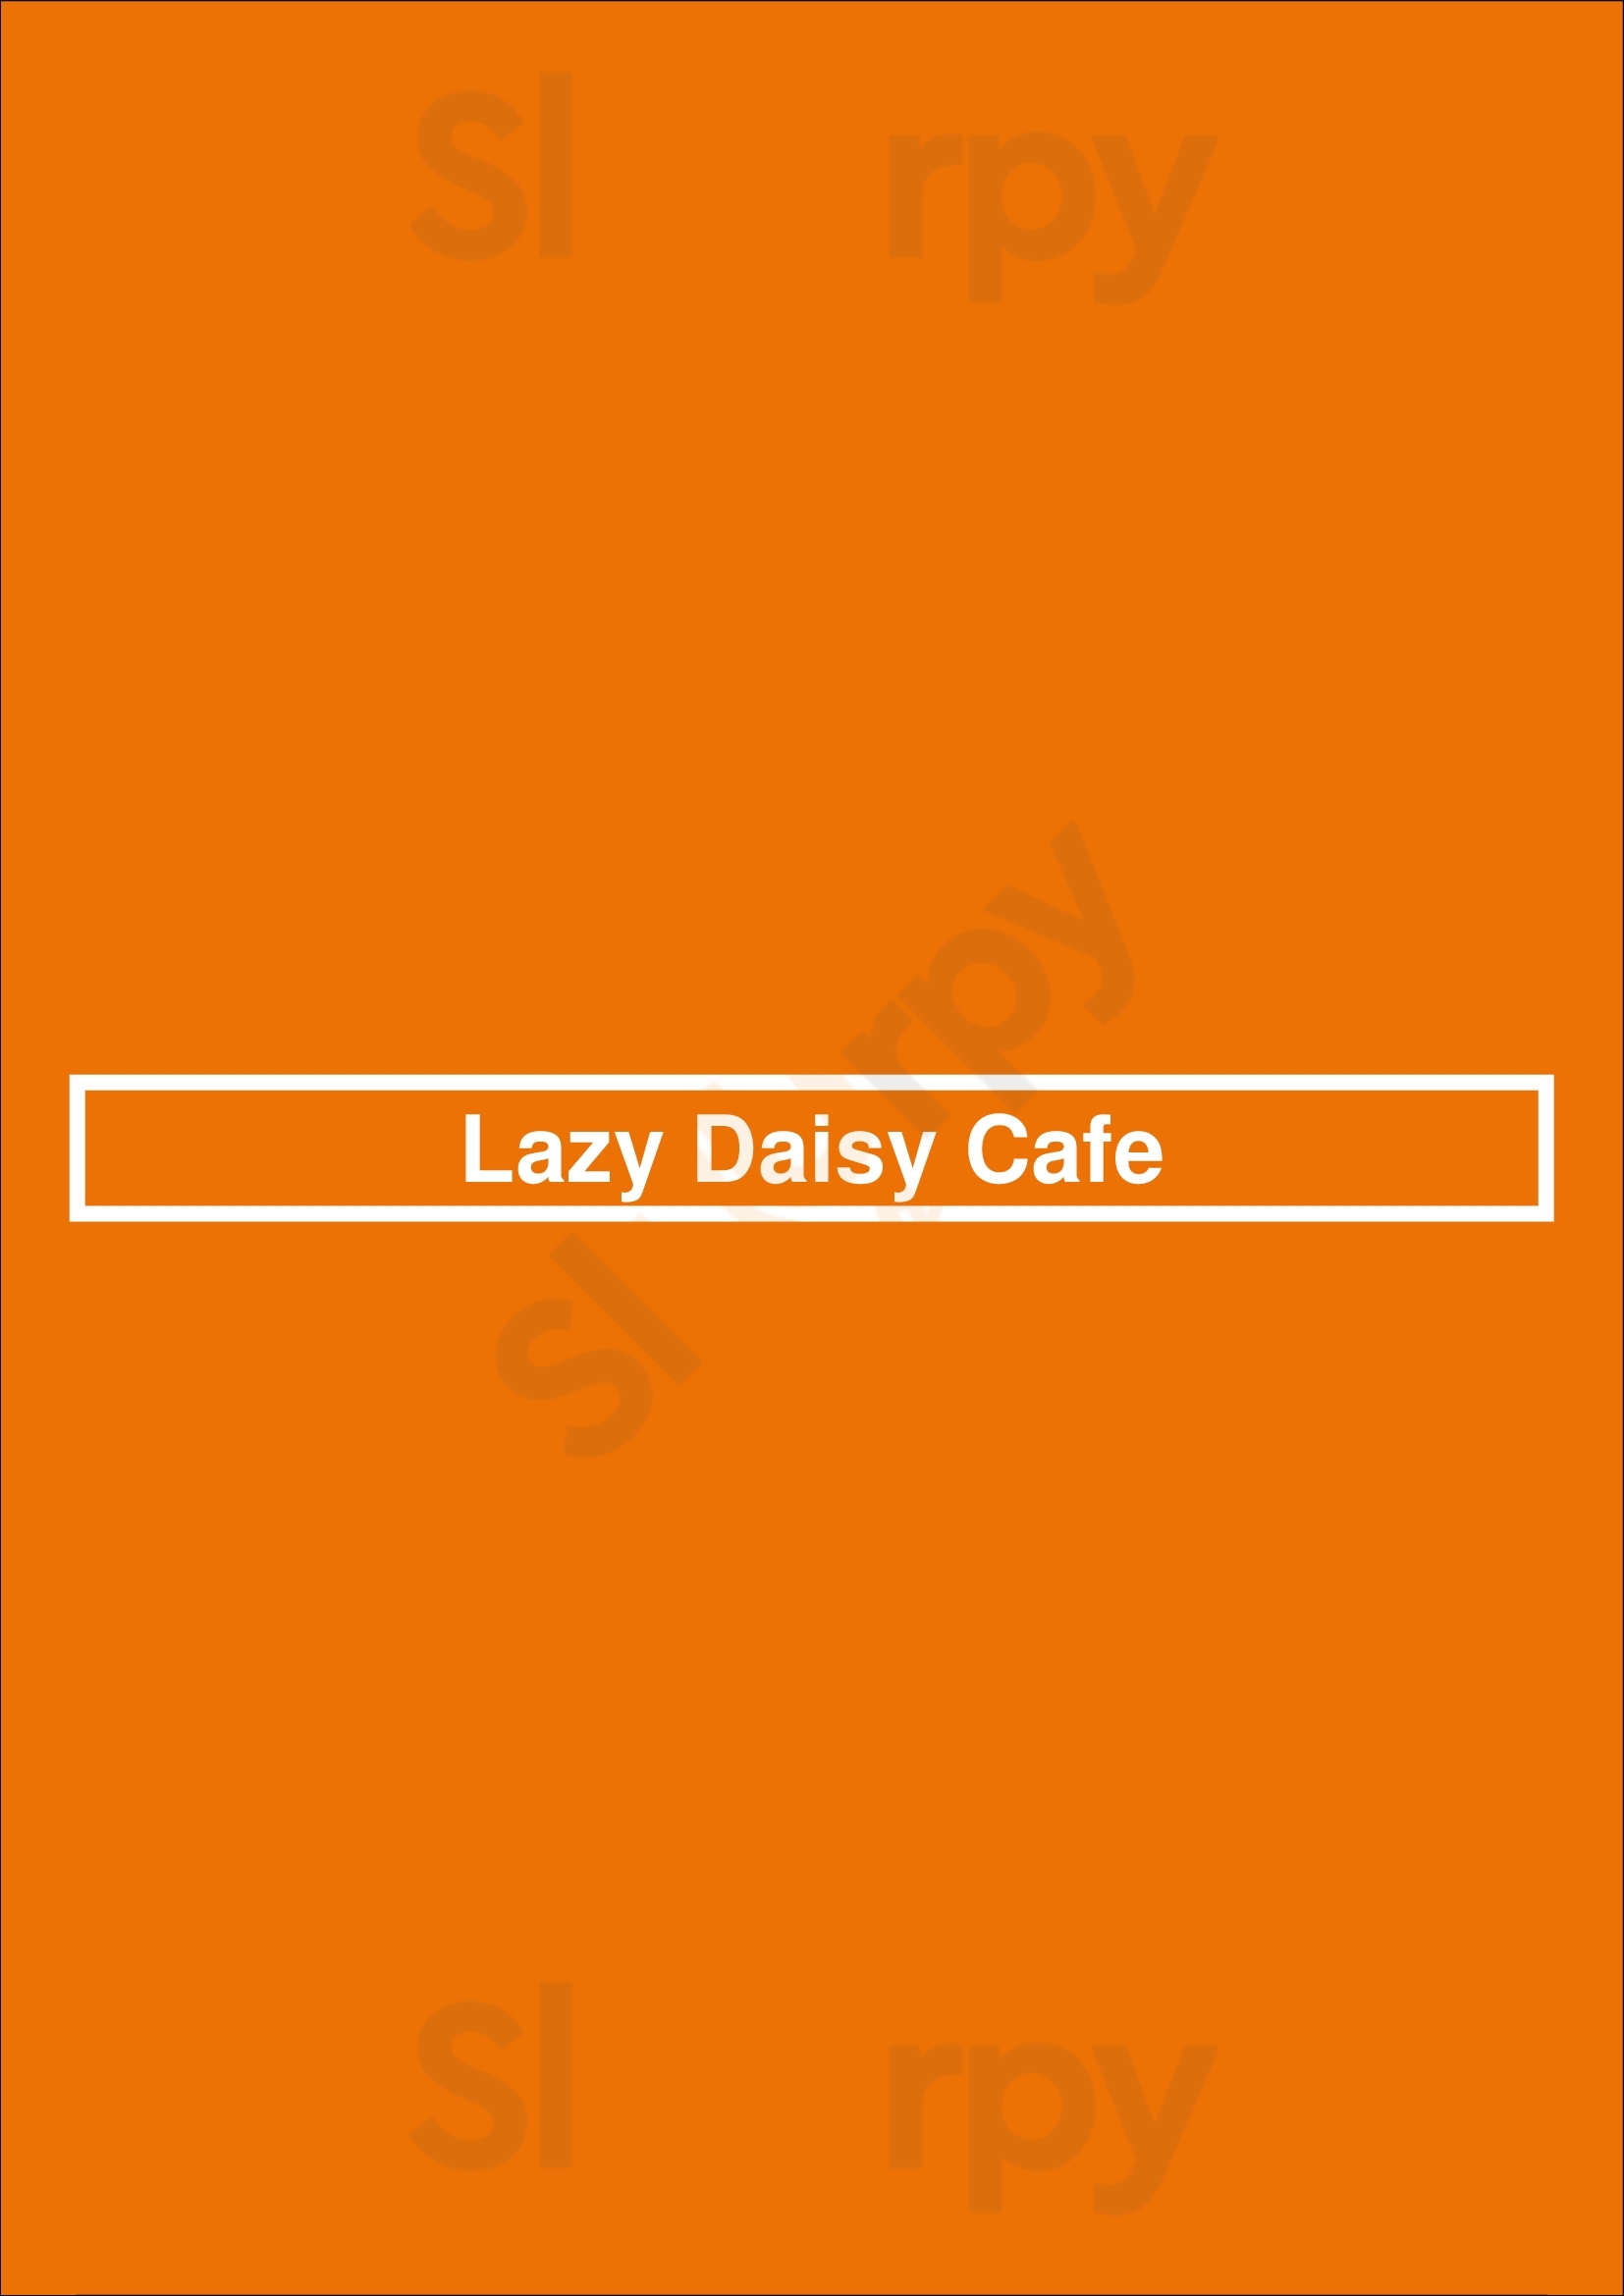 Lazy Daisy Cafe Beverly Hills Menu - 1